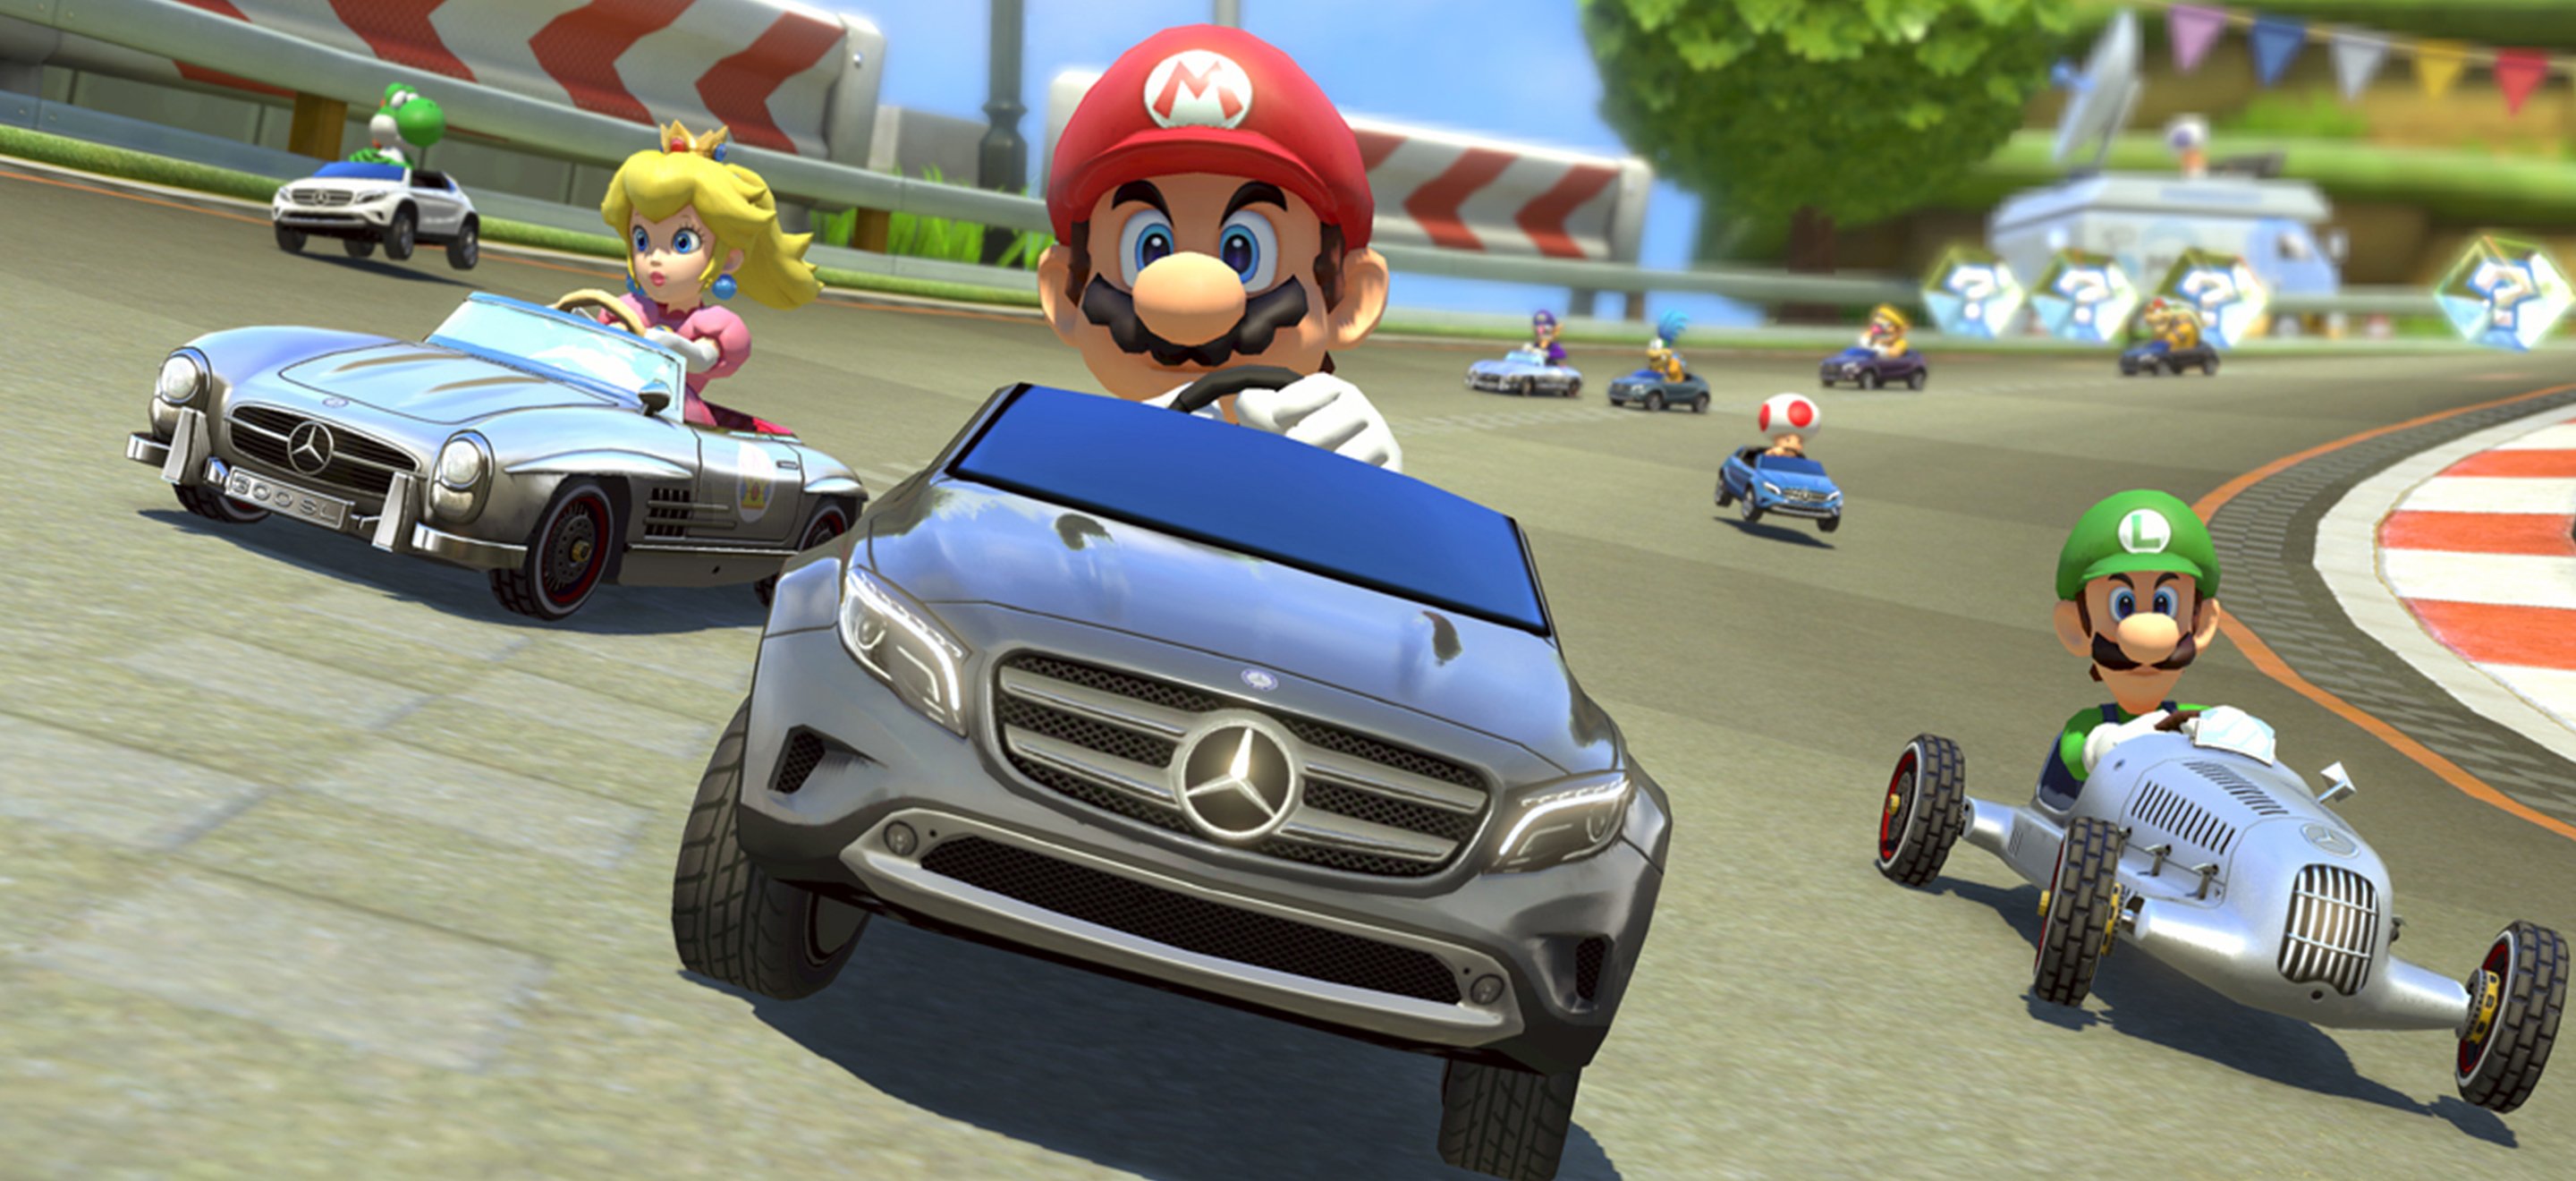 Le guide du sale type sur Mario Kart